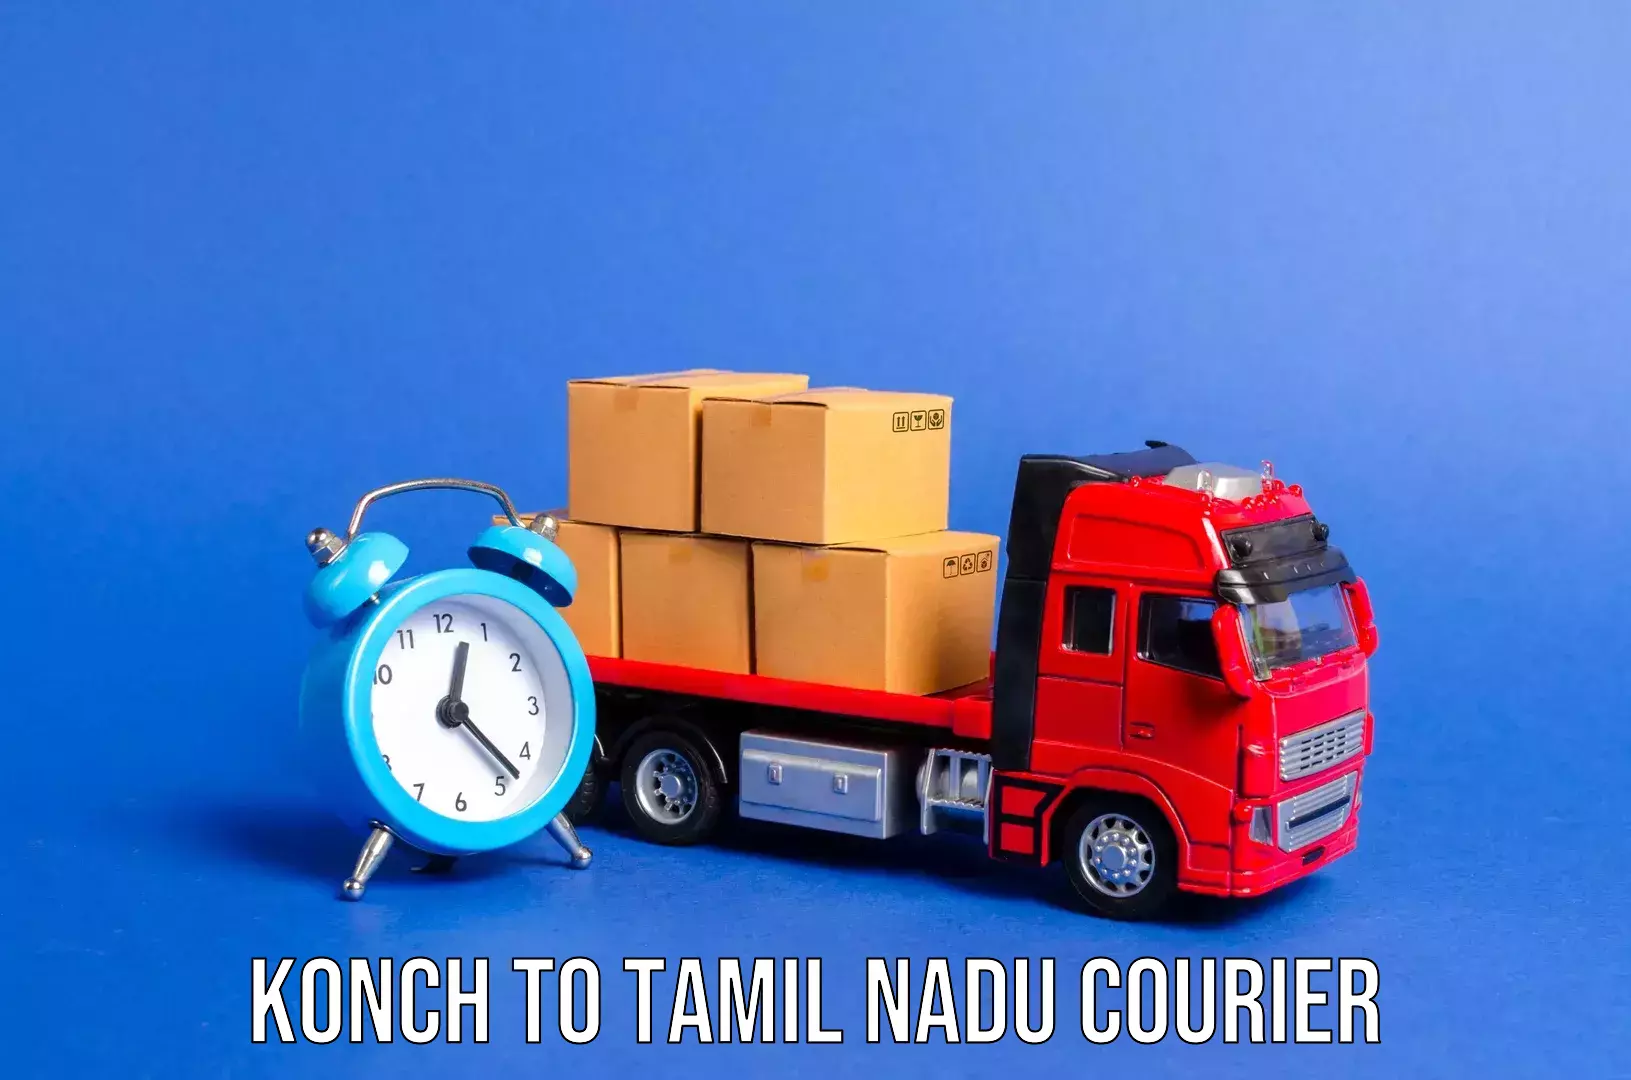 Luggage shipment strategy Konch to Tamil Nadu